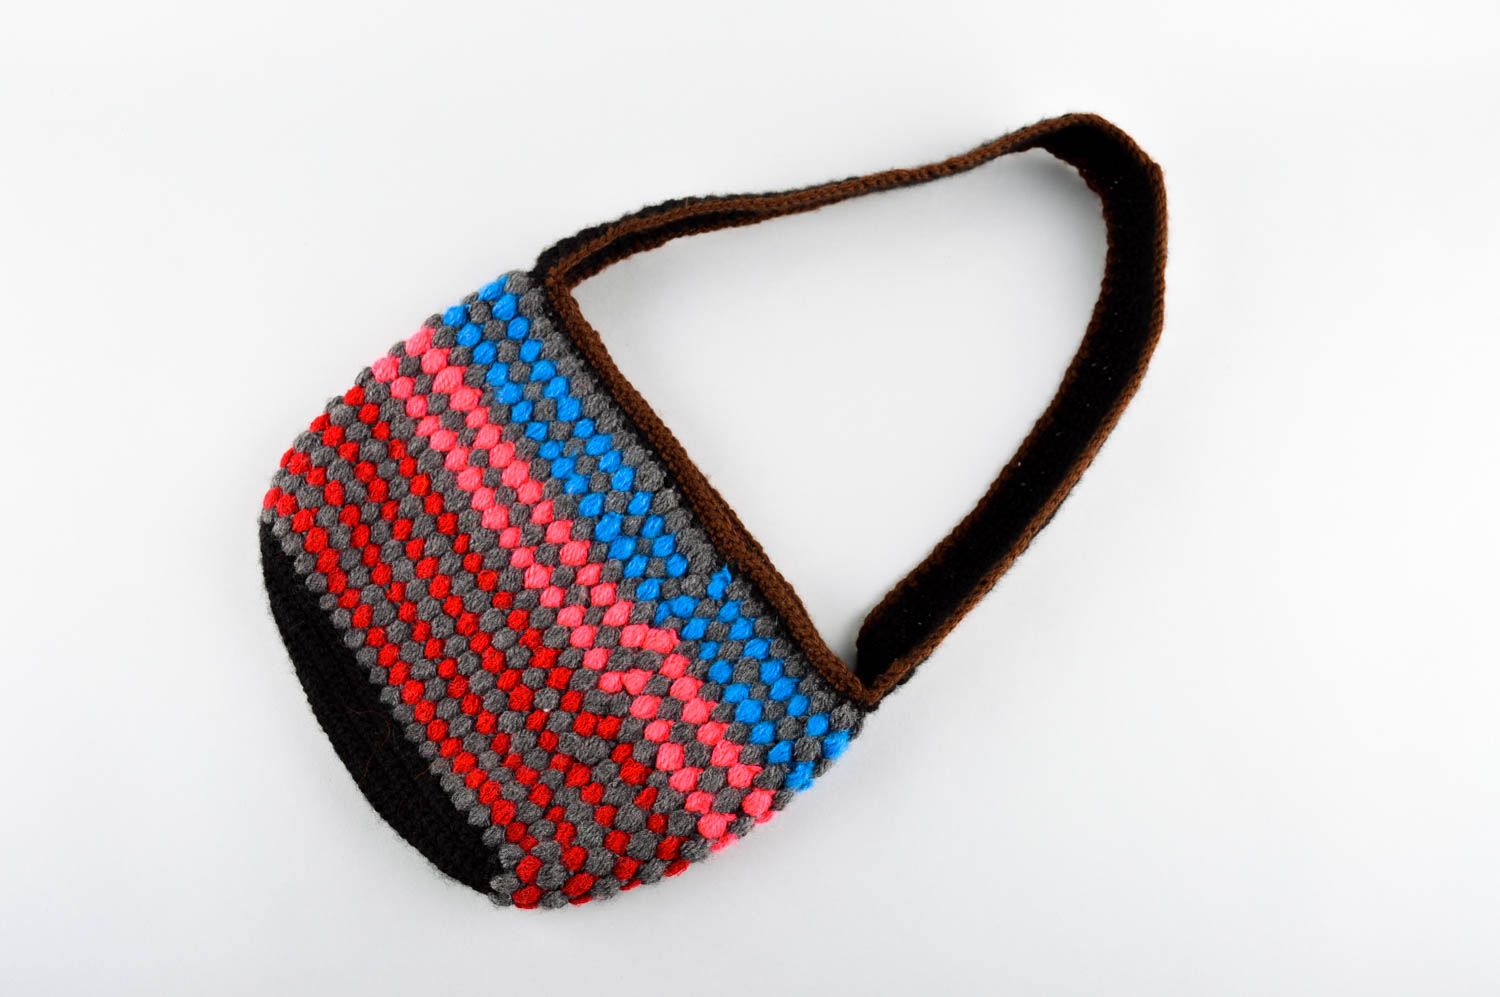 Сумка ручной работы женская сумка вязаная спицами красивая сумка разноцветная фото 3